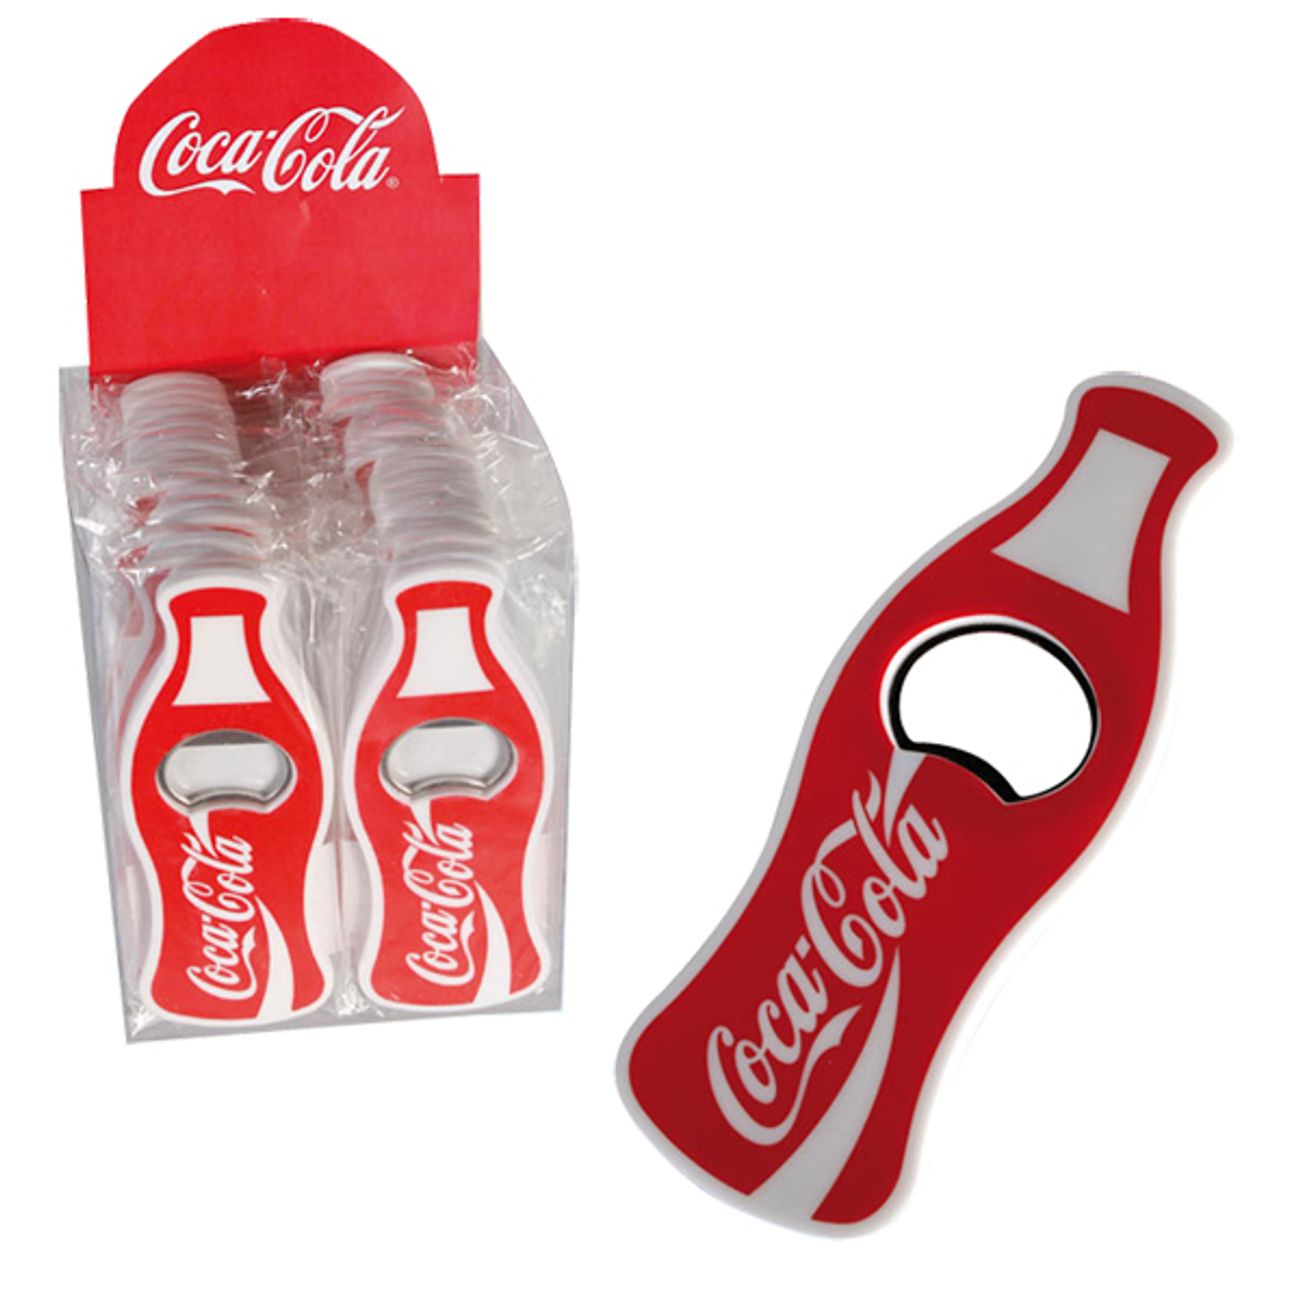 coca-cola-flaskoppnare-1